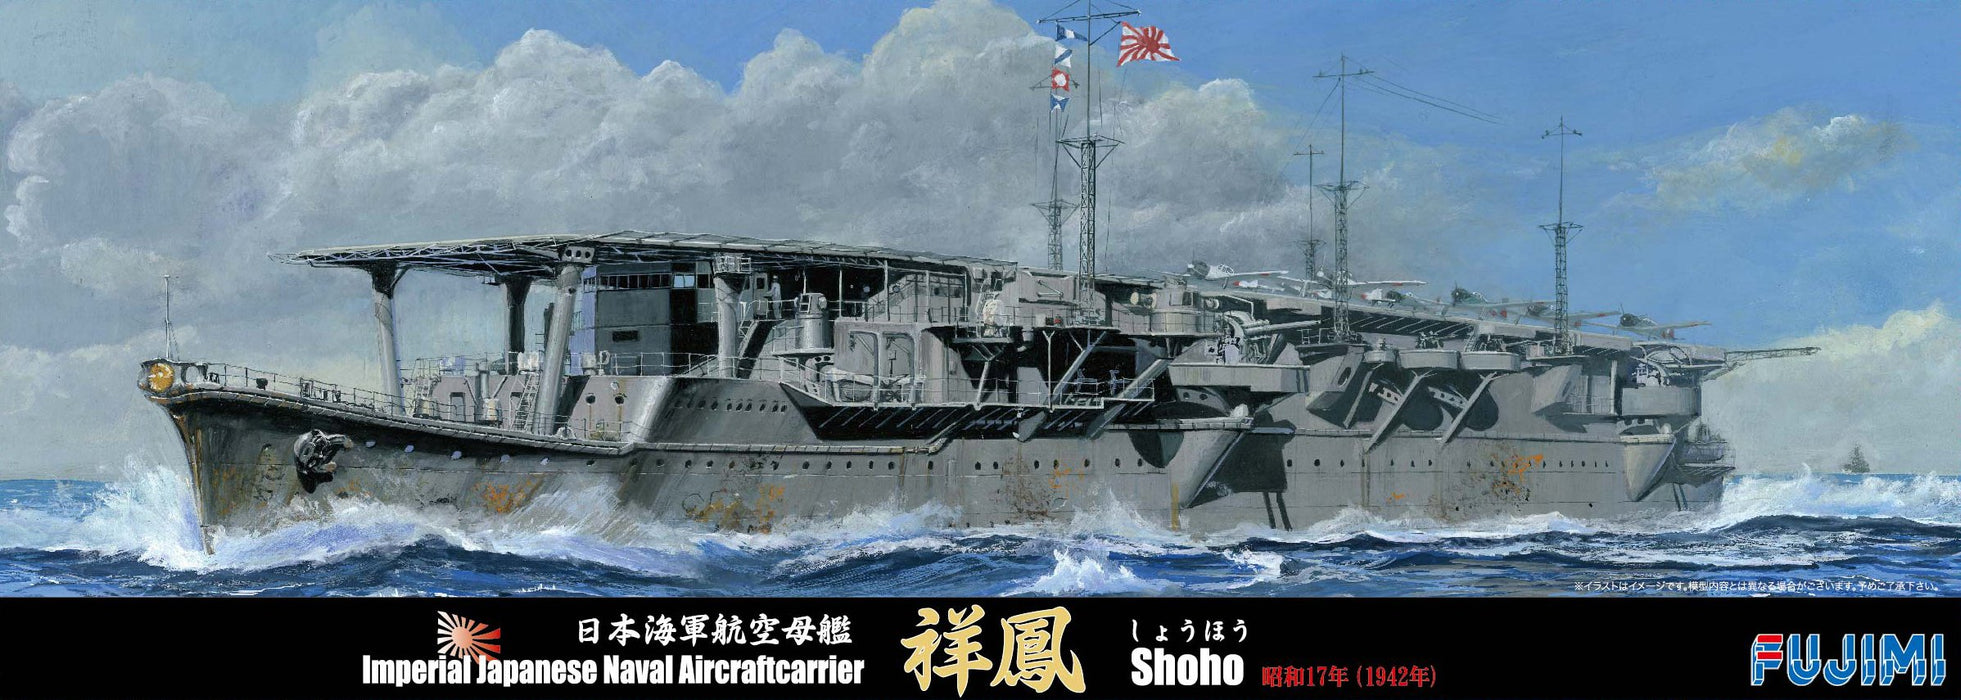 Fujimi modèle 1/700 série spéciale n°88 porte-avions de la marine japonaise Shoho Showa 17 modèle en plastique spécial 88